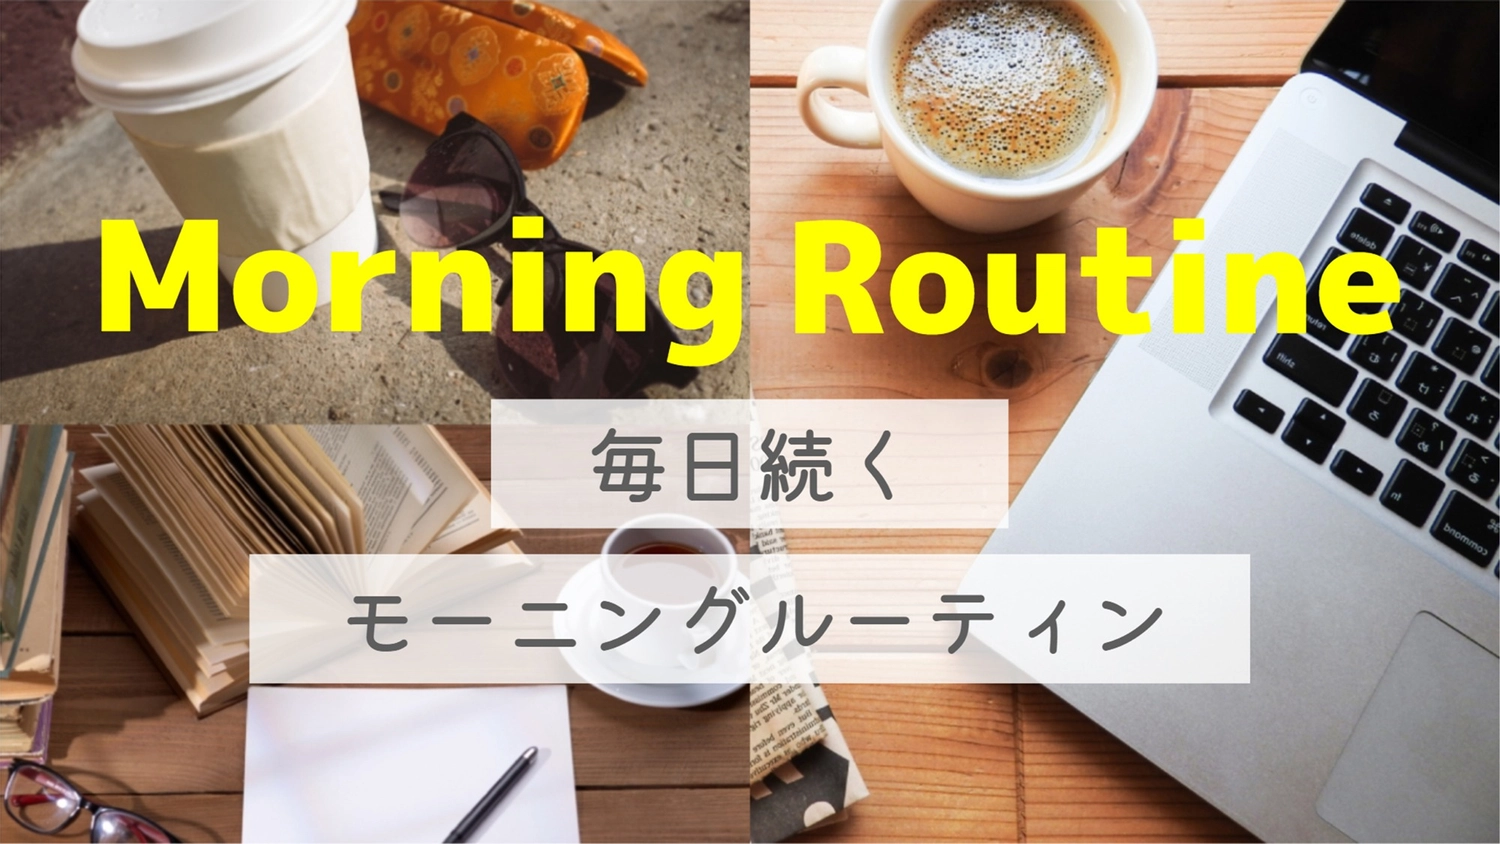 俯瞰写真のモーニングルーティン, morning routine, headline, Lifestyle, Blog Banner template